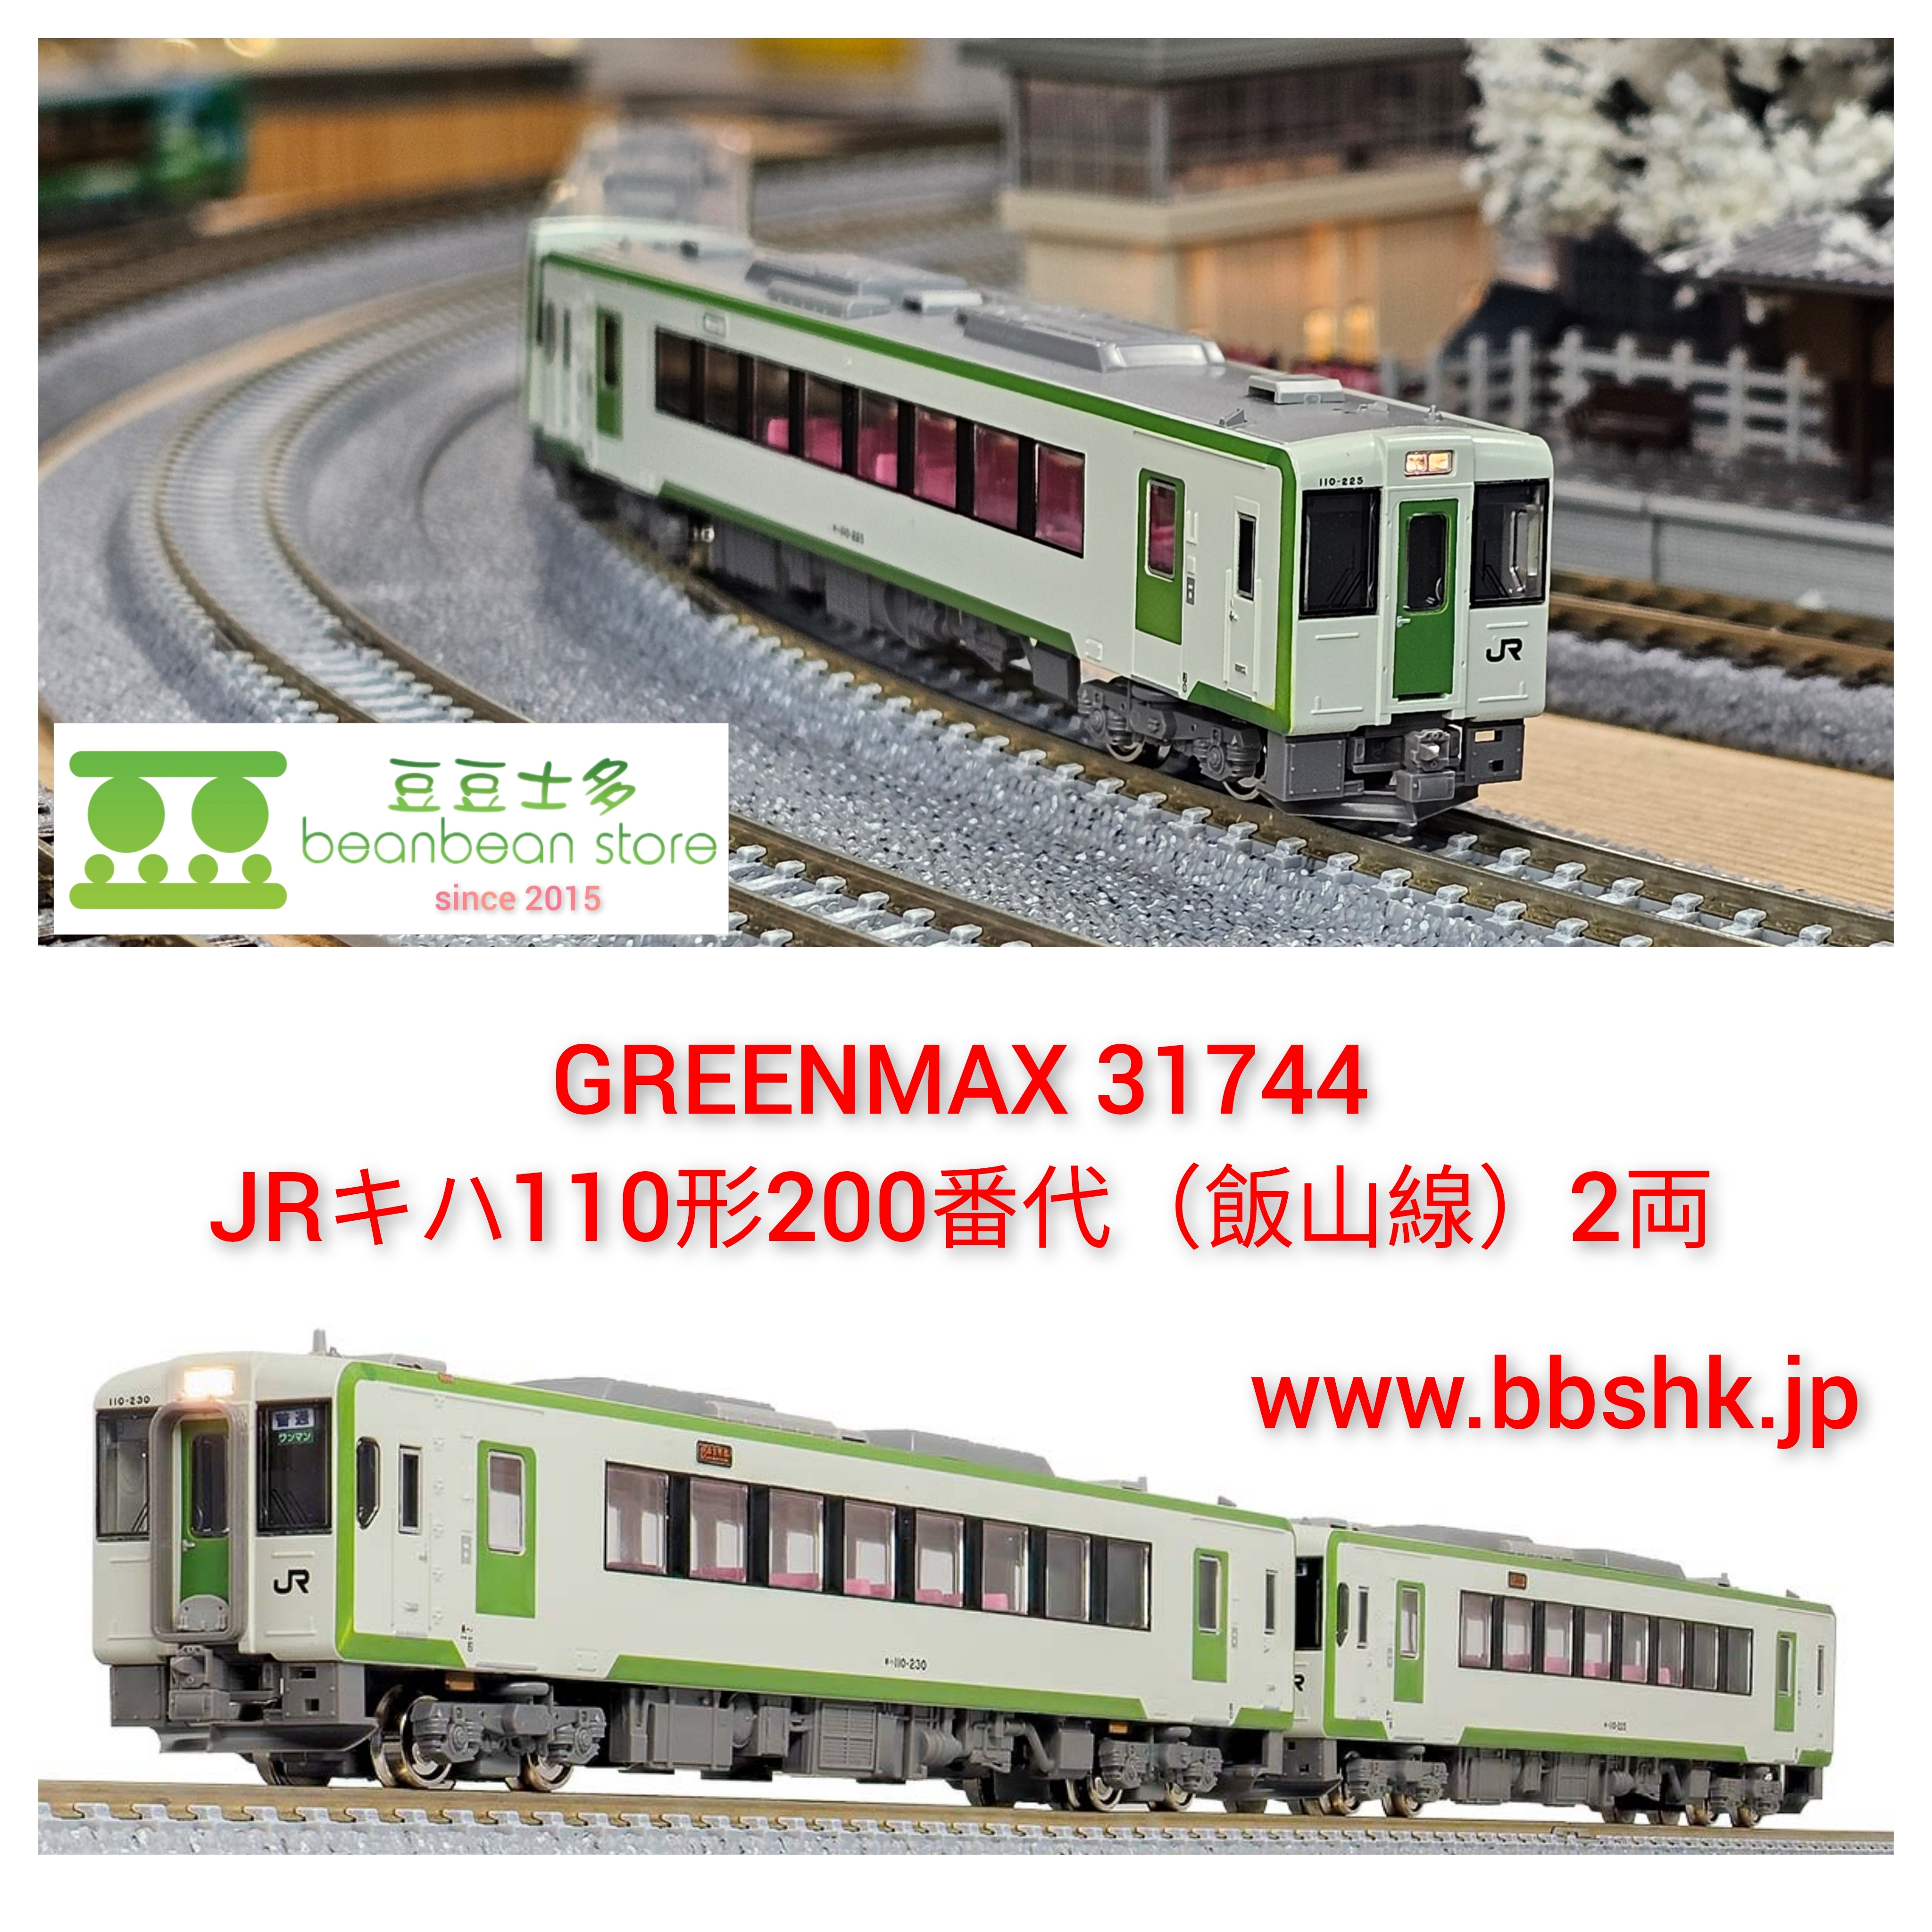 GREENMAX 31744 JR キハ110形200番代 (飯山線) 2両